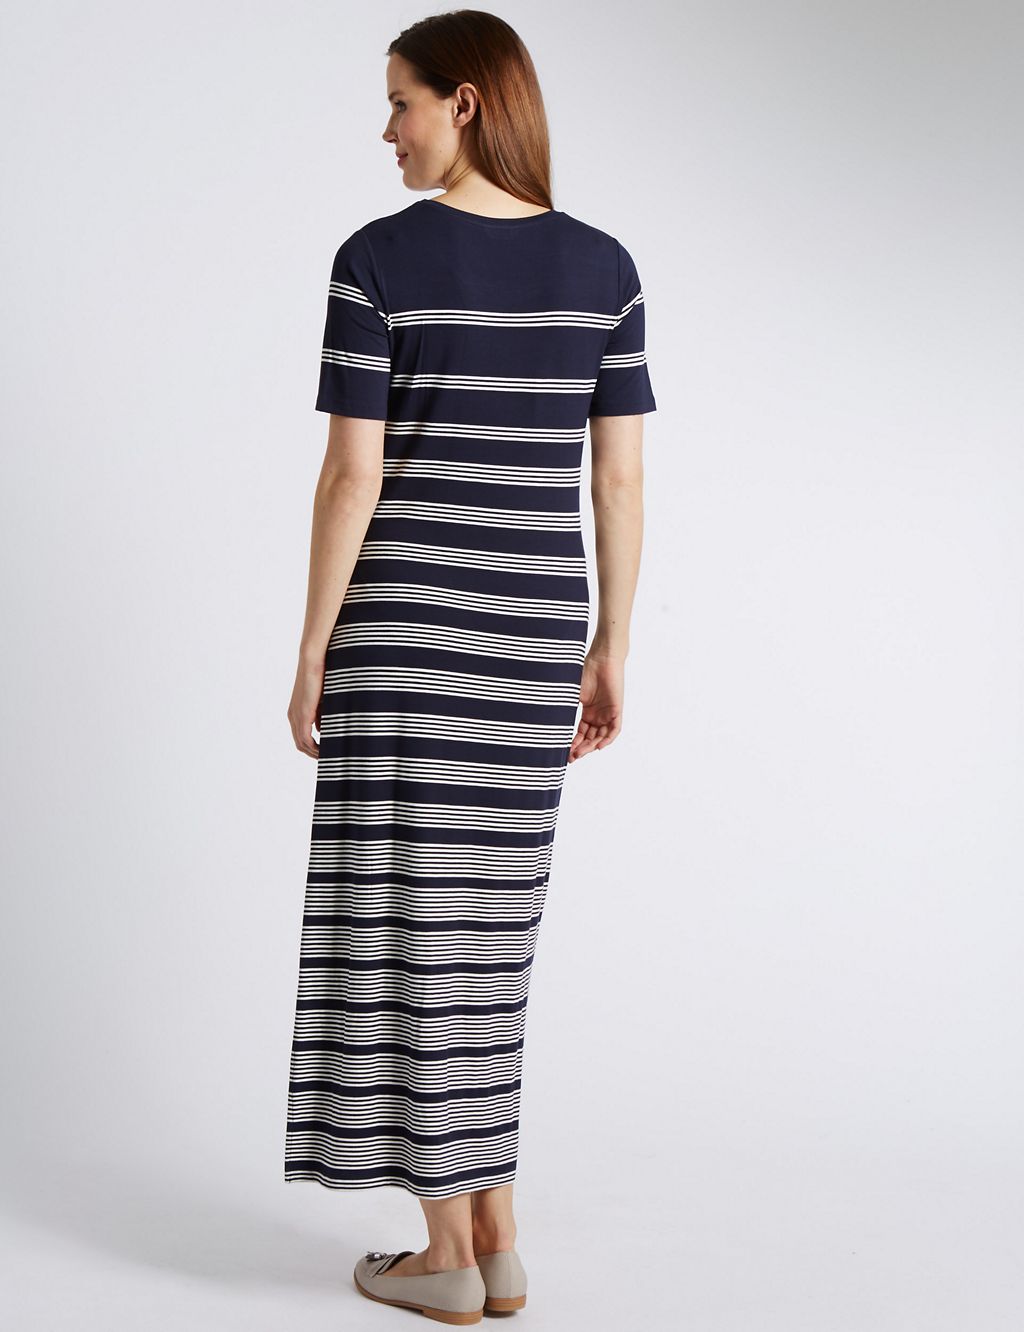 Striped Maxi Dress 2 of 3